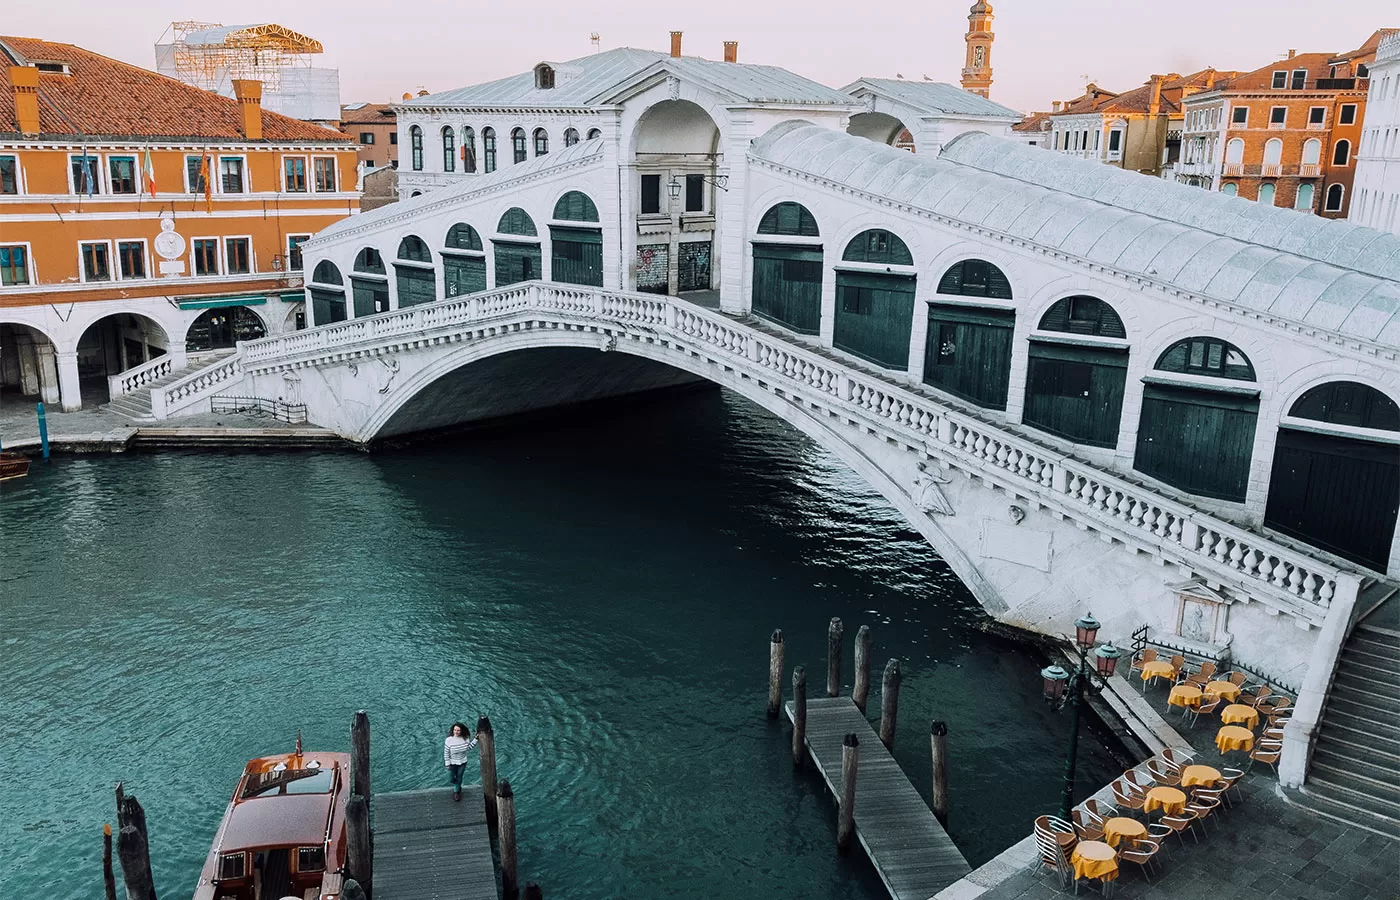 Where to Stay in Venice - Best Hotels in Venice - San Polo - Rialto Bridge